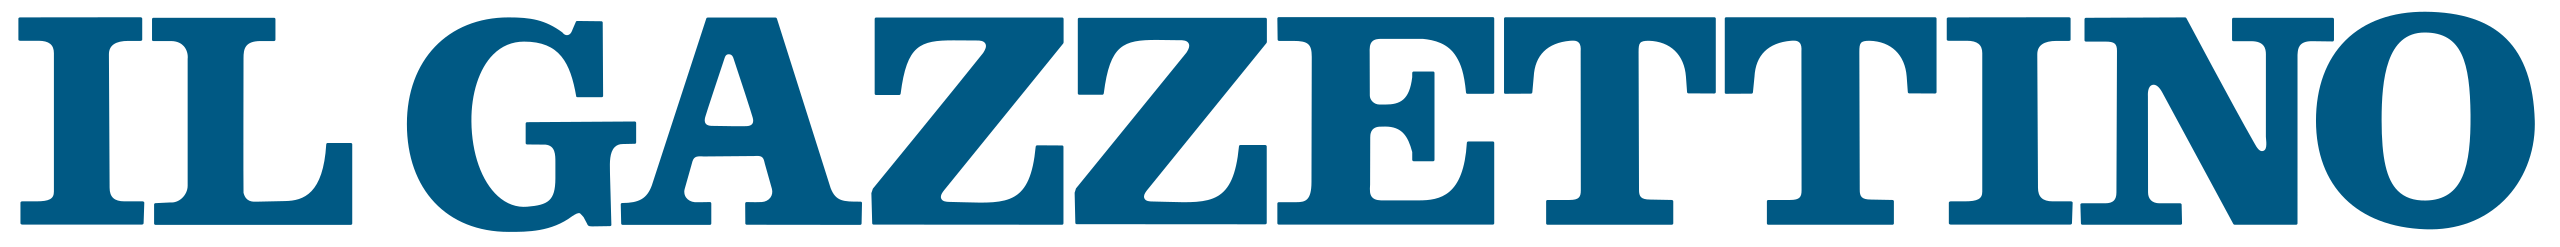 Il Gazzettino logo